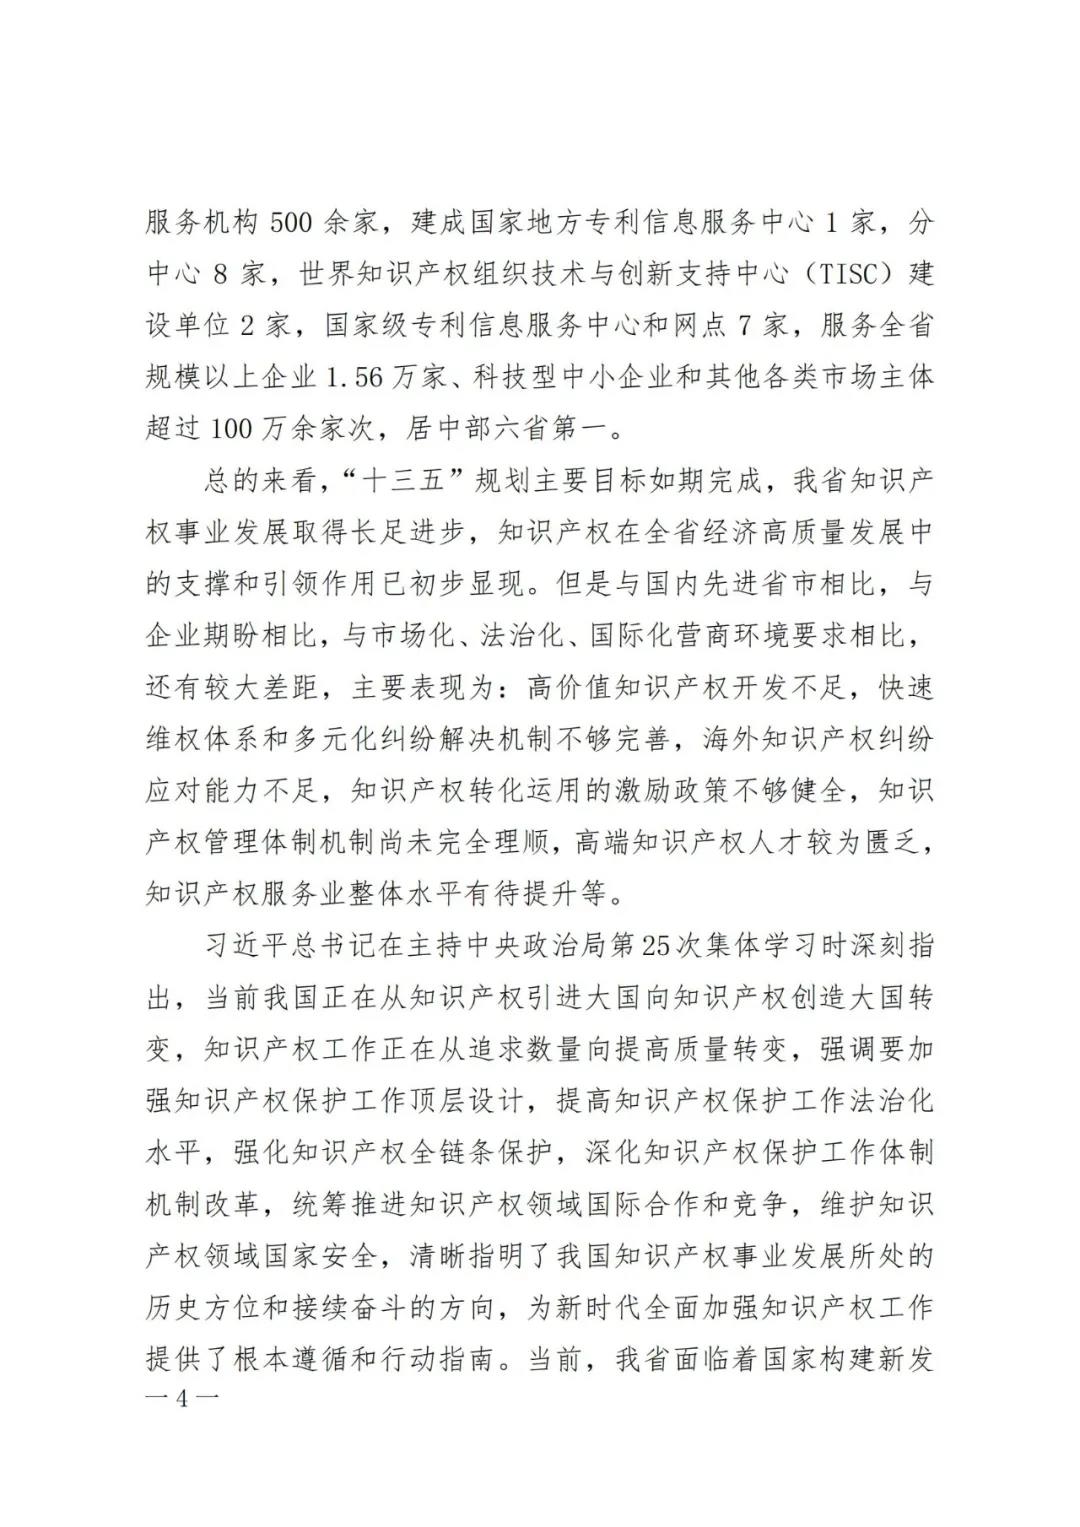 《河南省知识产权创造保护运用 “十四五”规划》全文发布！